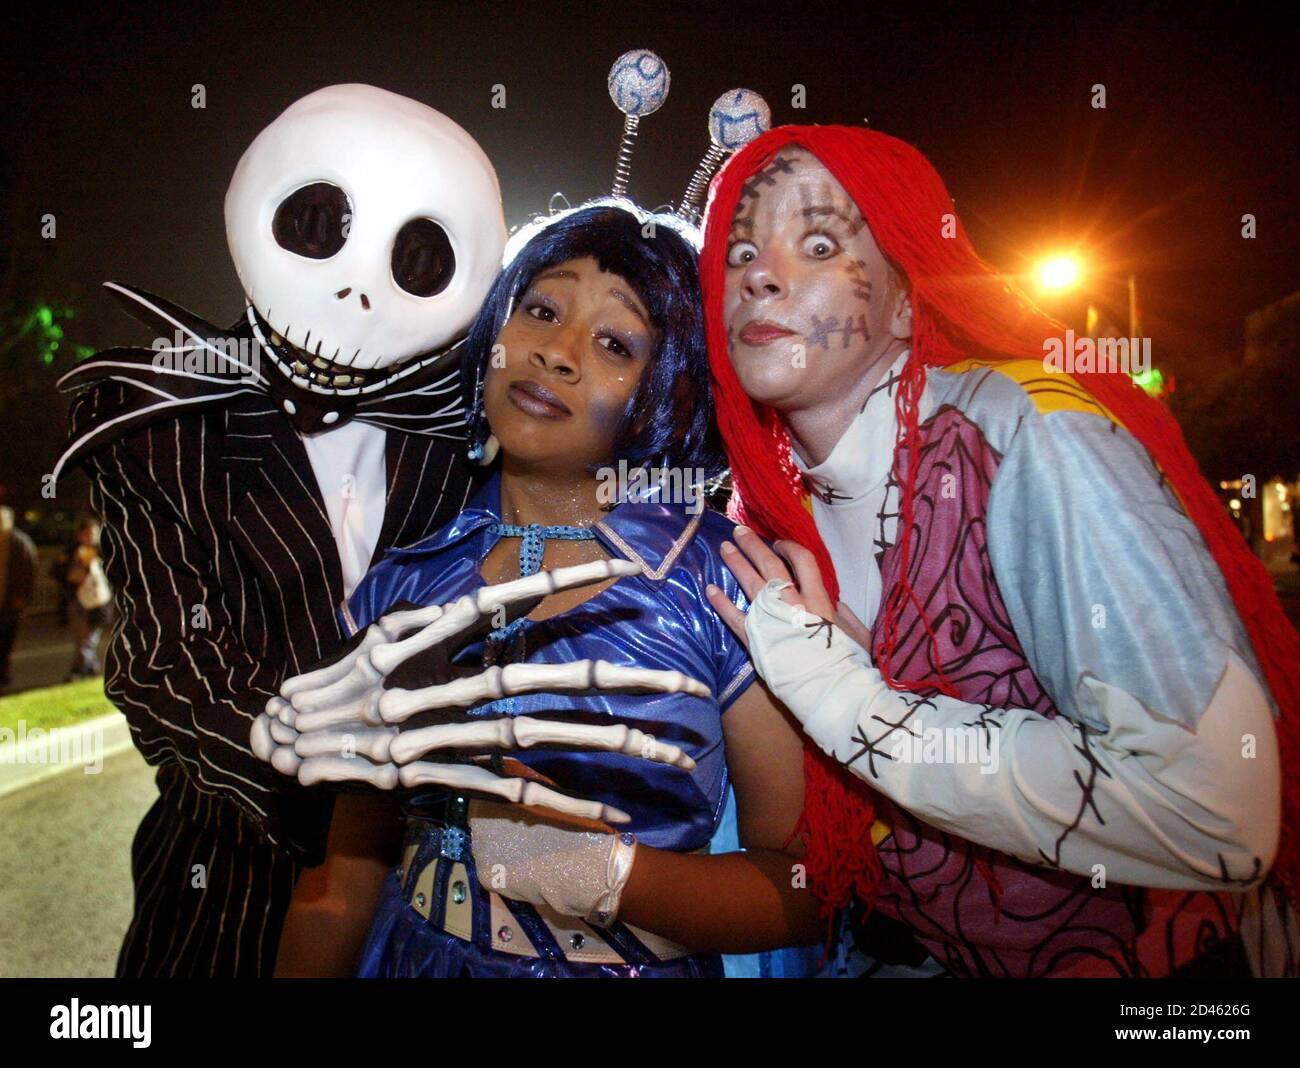 Lokale Halloween Nachtschwärmer zeigen ihre Kostüme während der West  Hollywood Halloween Kostüm Karneval in Los Angeles am 31. Oktober 2002  Stockfotografie - Alamy